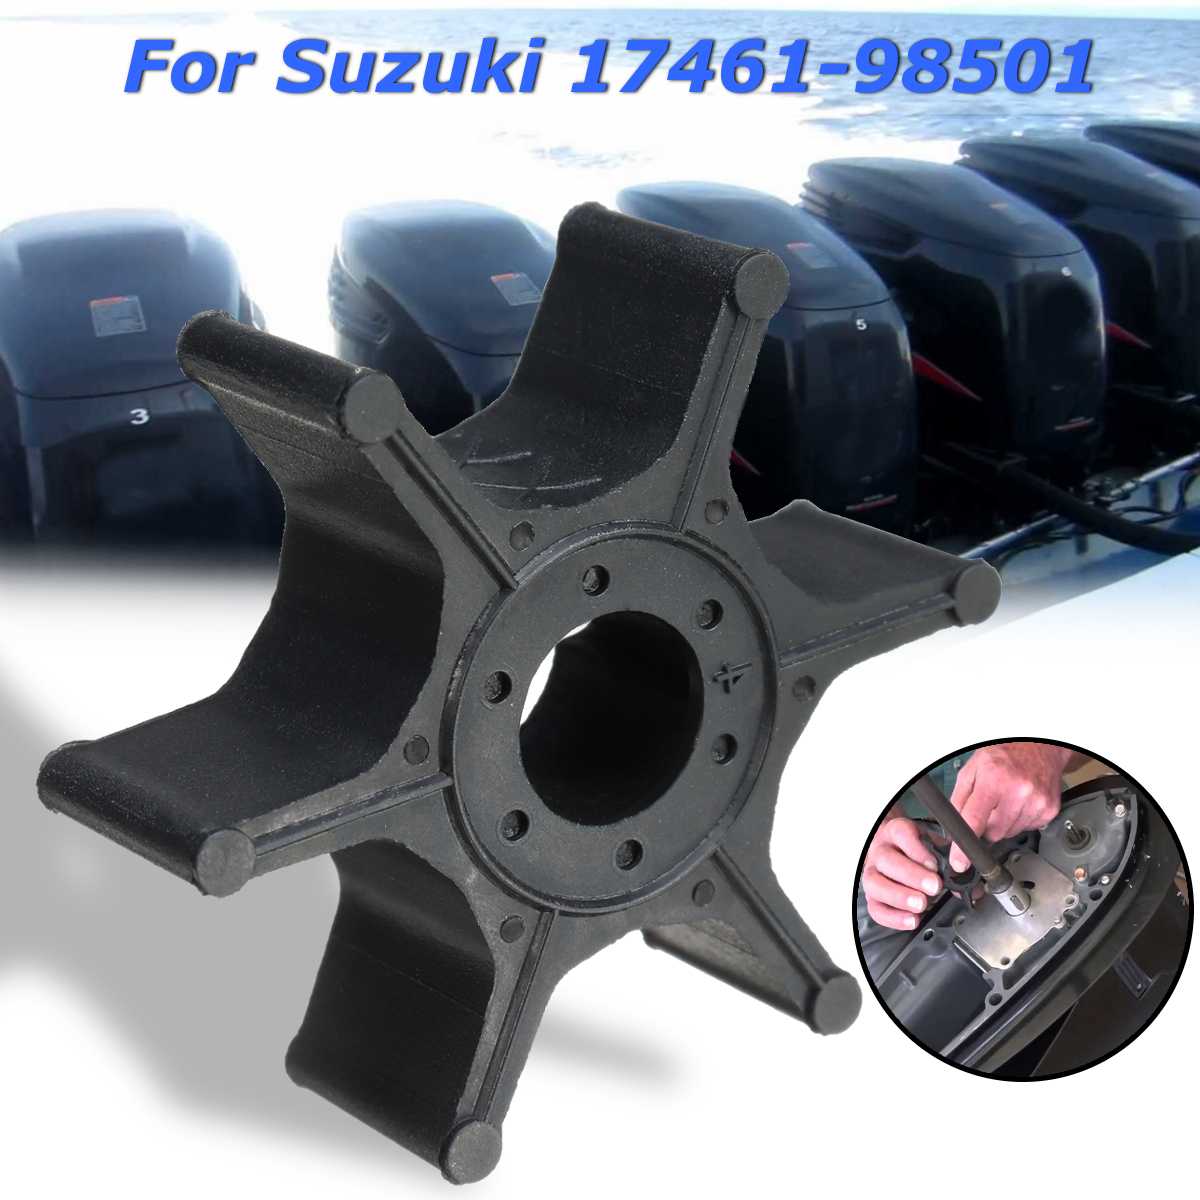 Udskiftning af påhængsmotorer 17461-98501 vandpumpehjul til suzuki 2-8hp sort gummi 6 knive tilbehør diameter 41mm